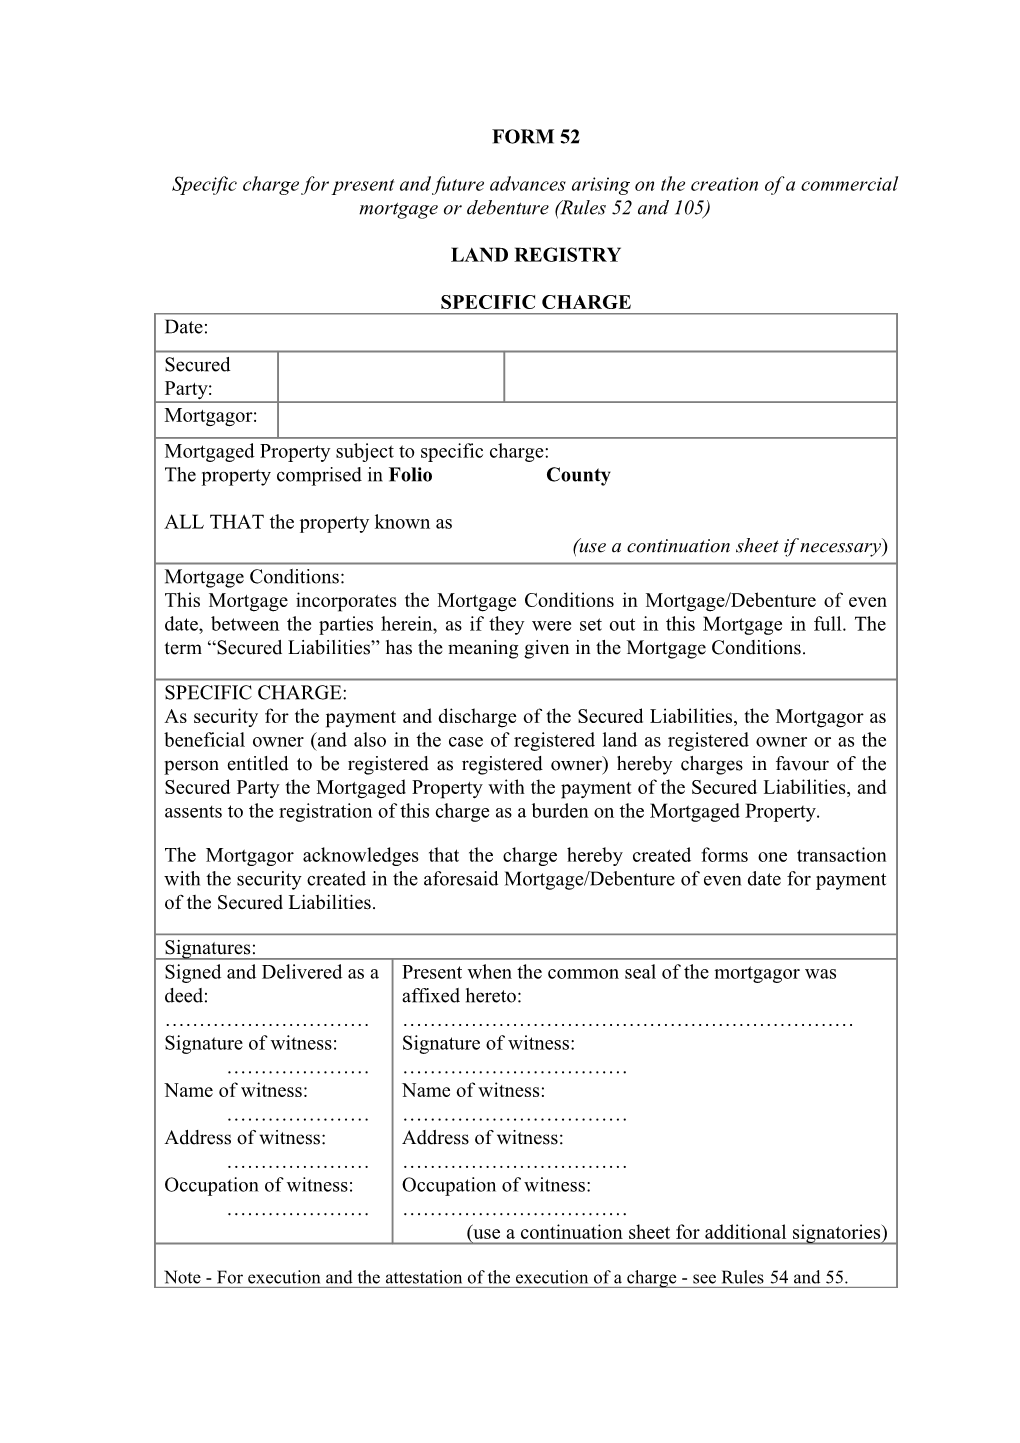 The Land Registration Rules December 2009